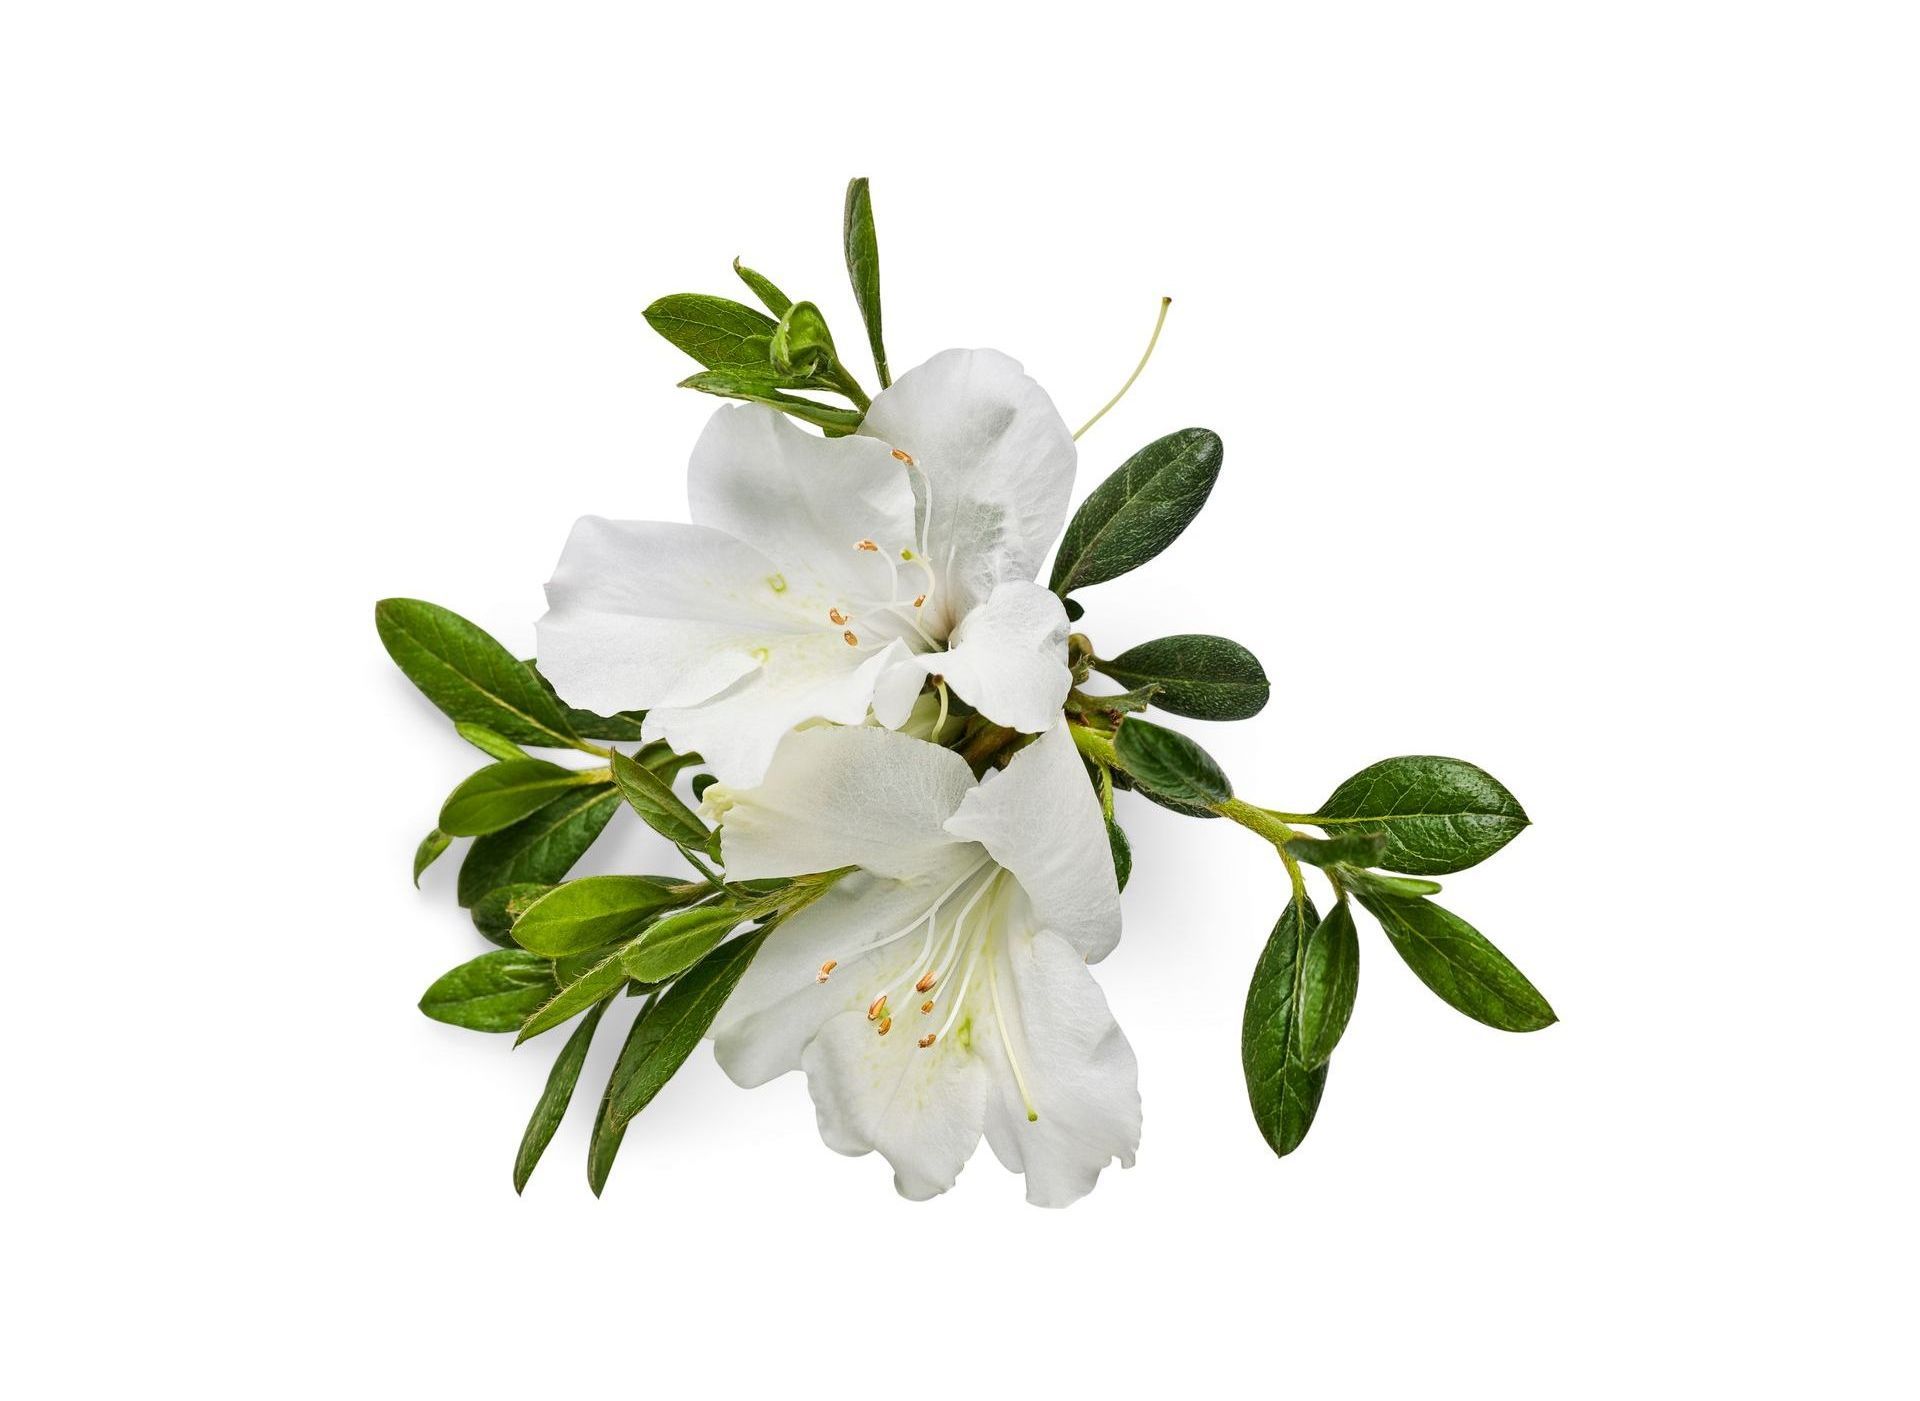 Delaware Valley White Azalea bush traditional flowering shrub for sale in Lebanon